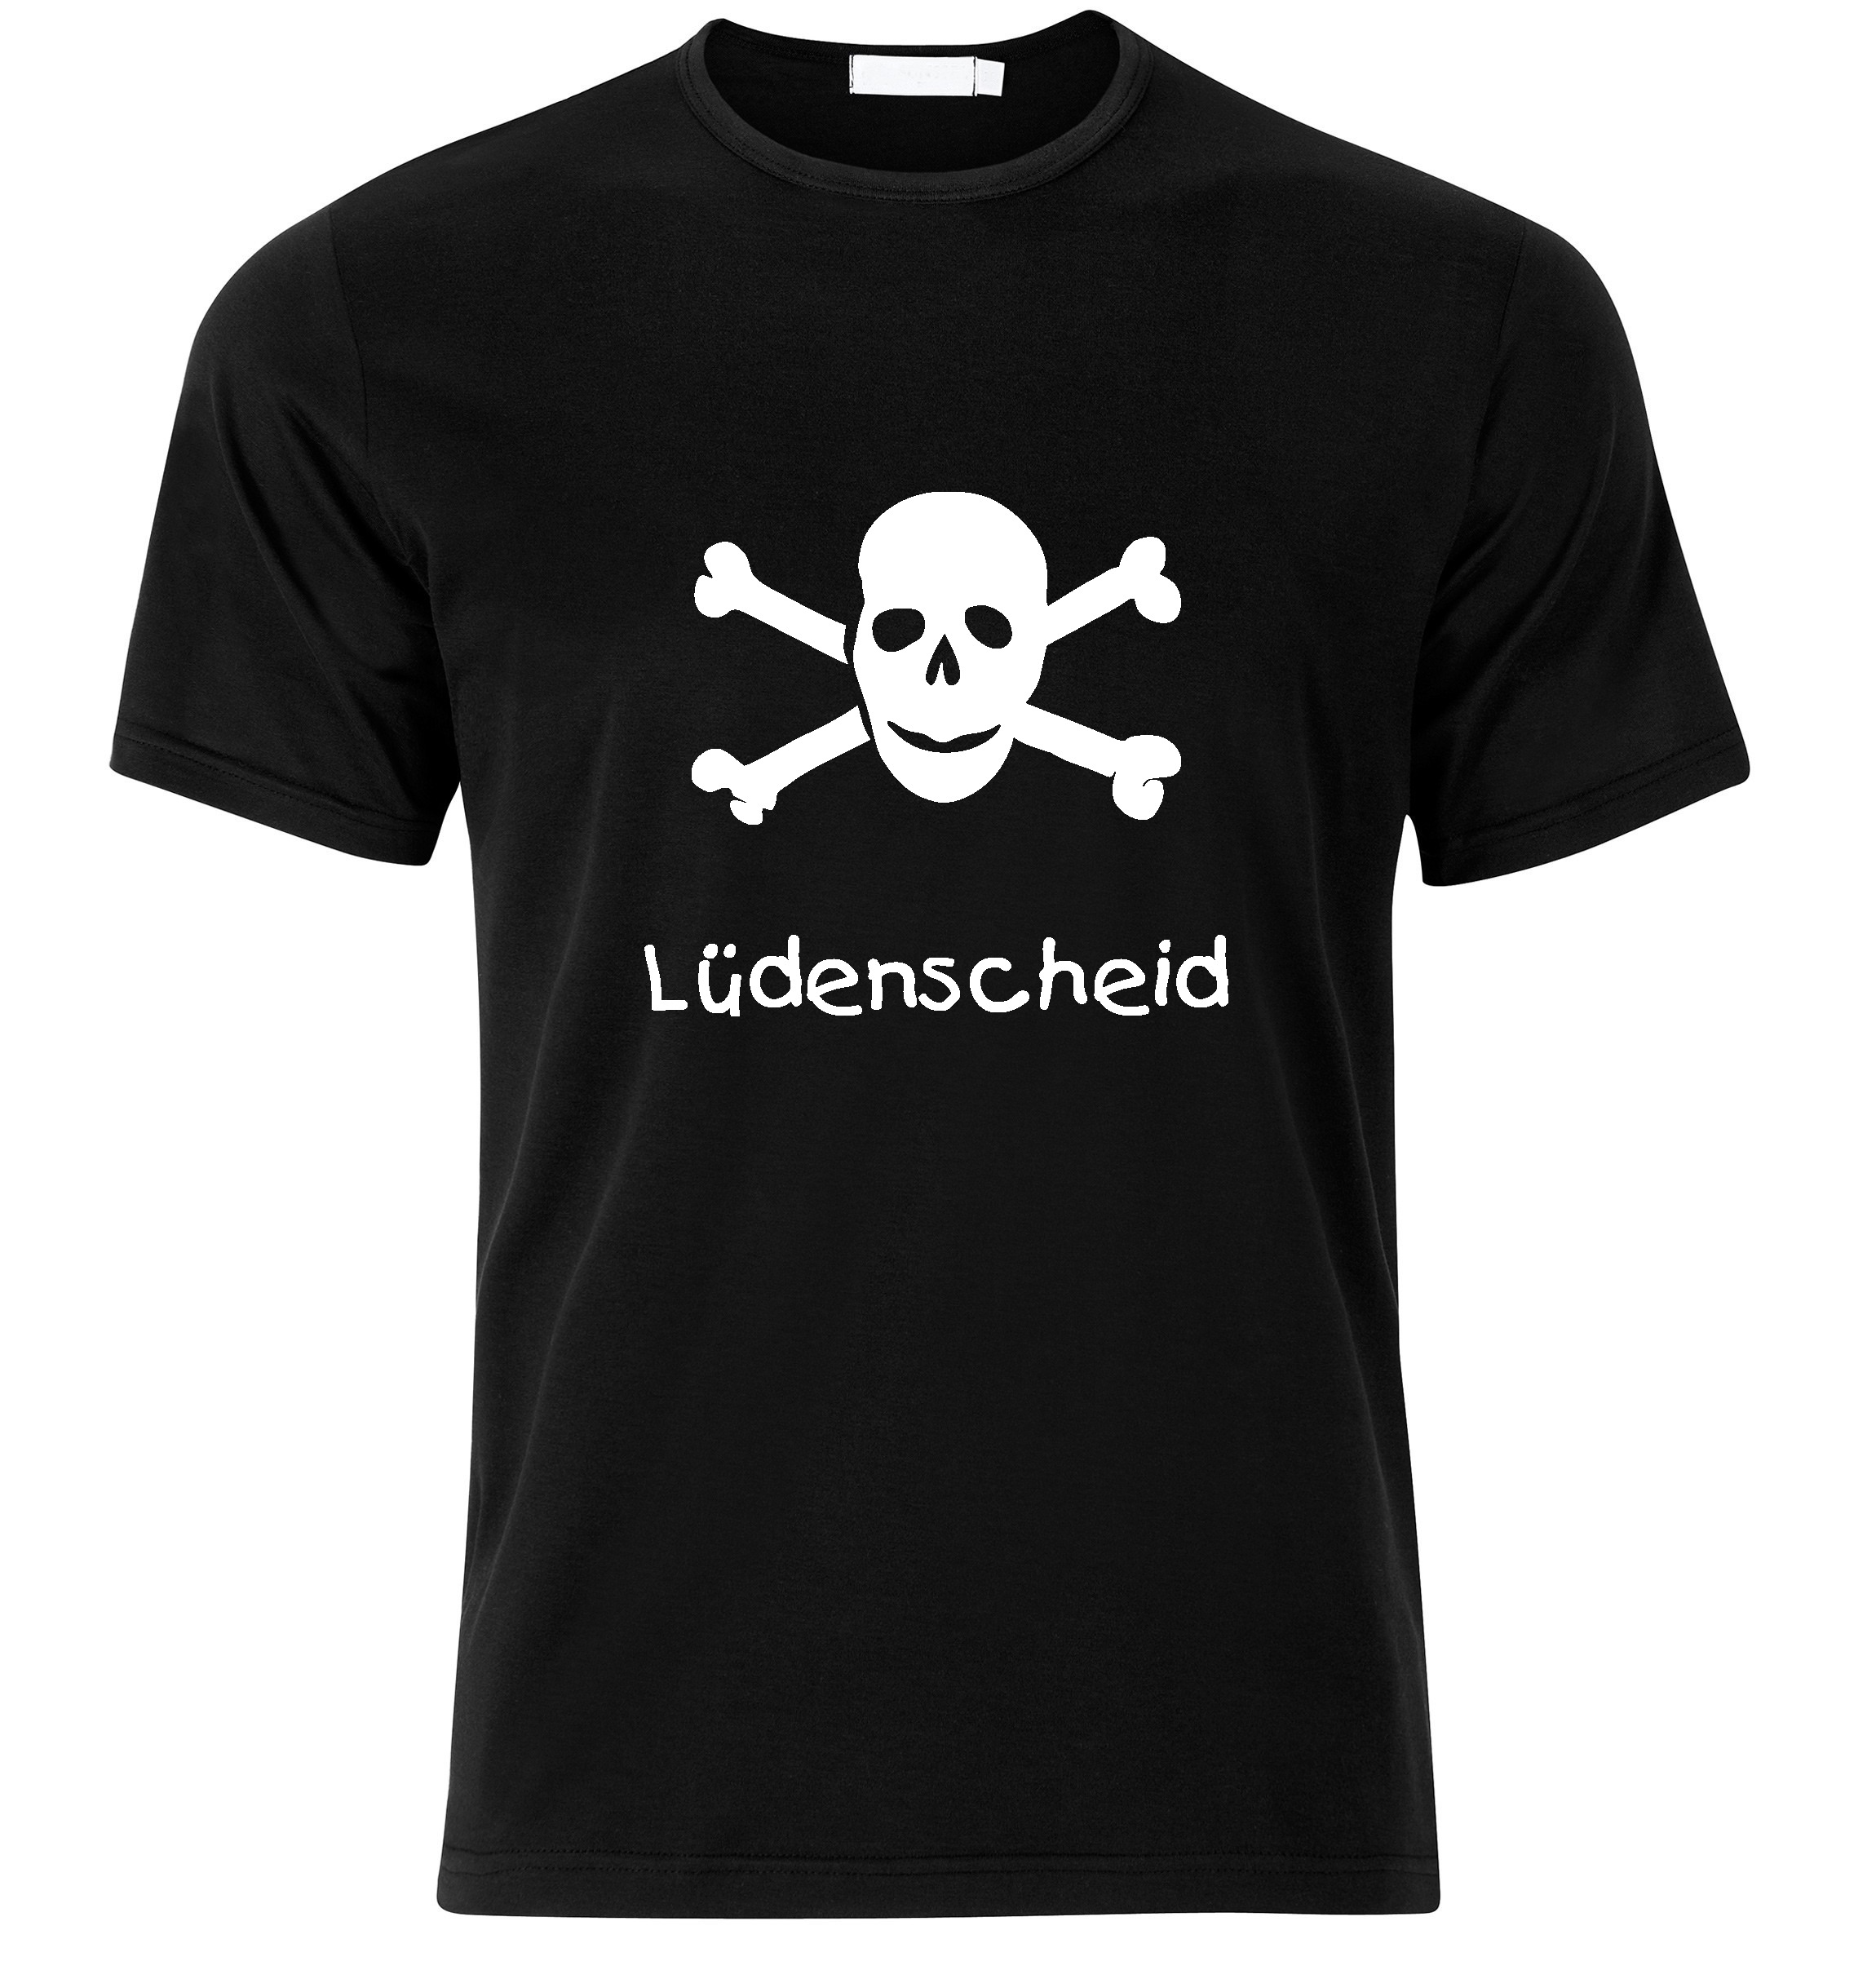 T-Shirt Lüdenscheid Jolly Roger, Totenkopf